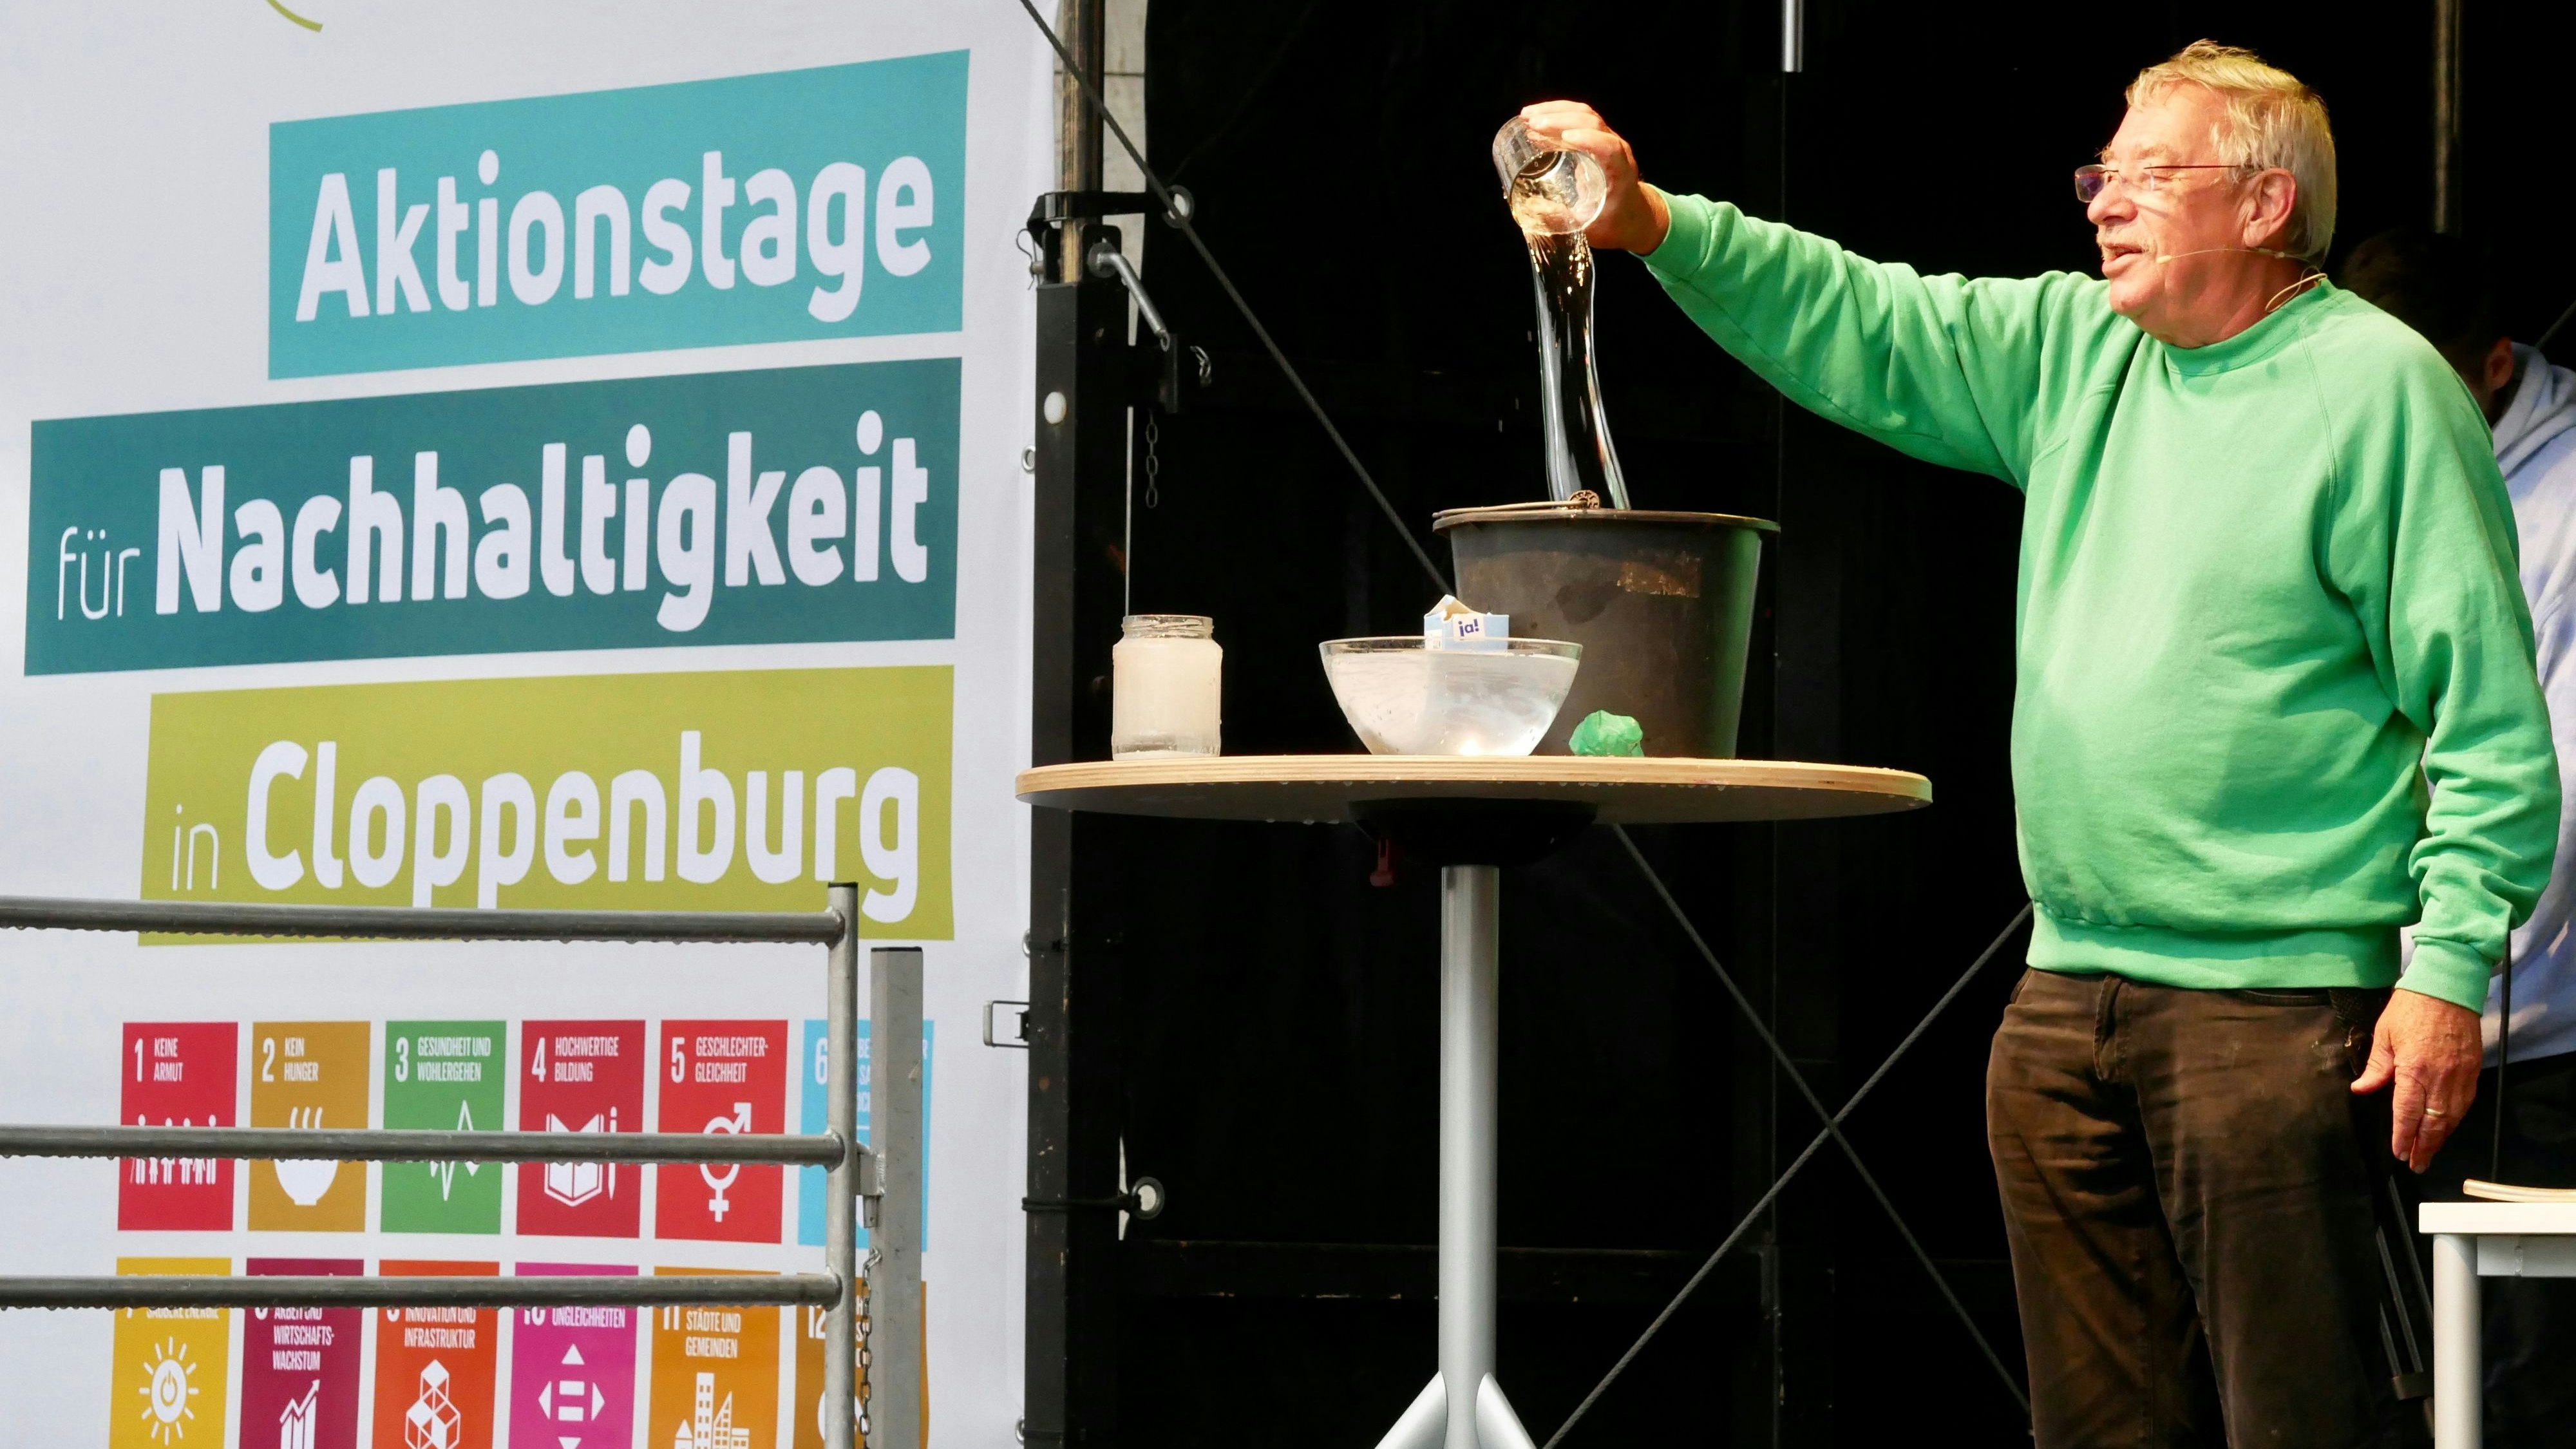 Natürlich im grünen Pullover: Christoph Biemann führte auf der Bühne verschiedene Experimente durch. Foto: Dickerhoff